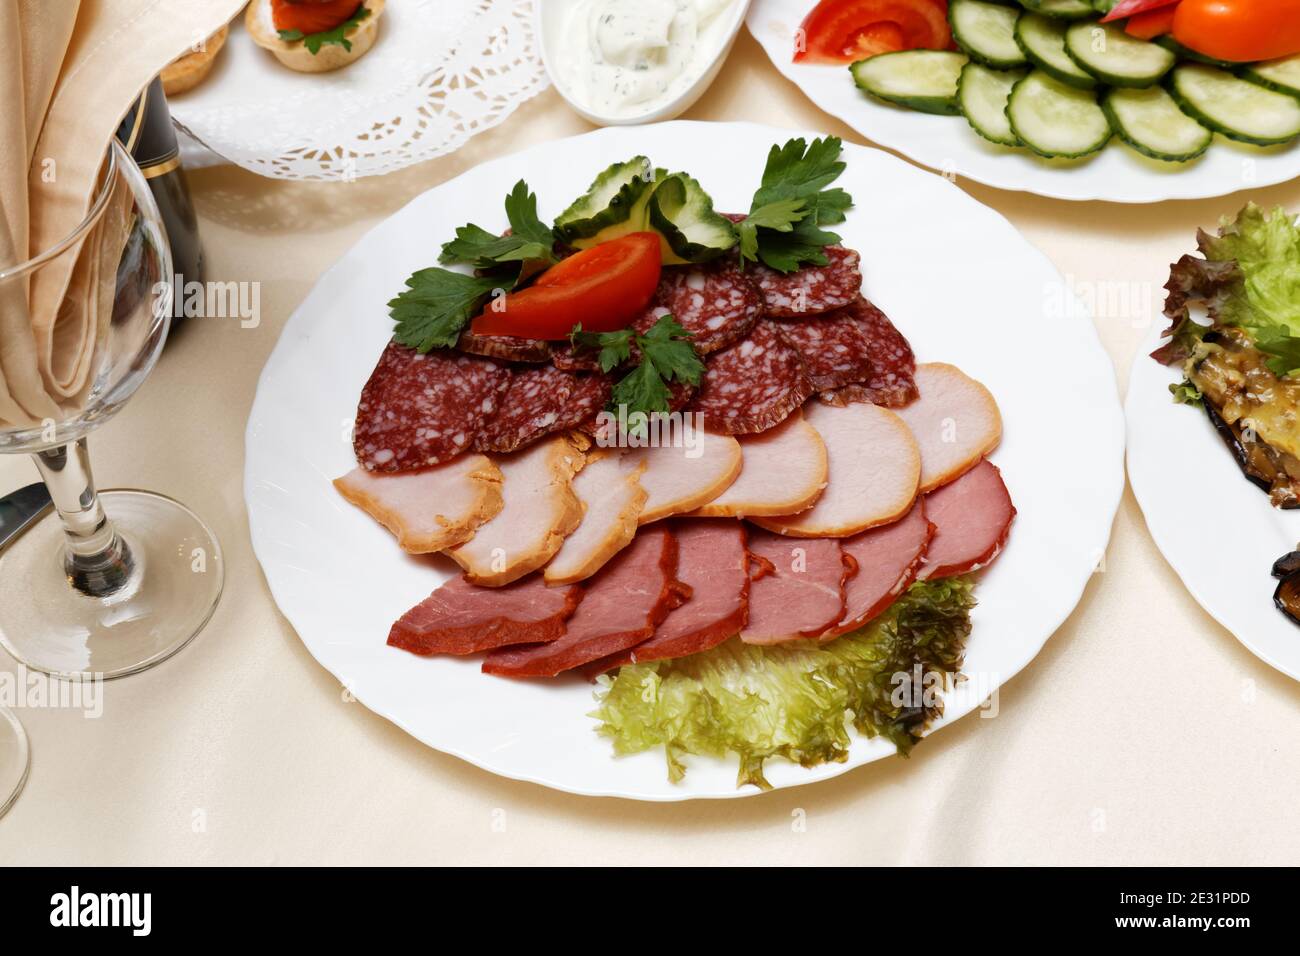 Fleisch Scheiben, Salami, Karbonat auf weißem Gericht umgeben von anderen Gerichten Stockfoto